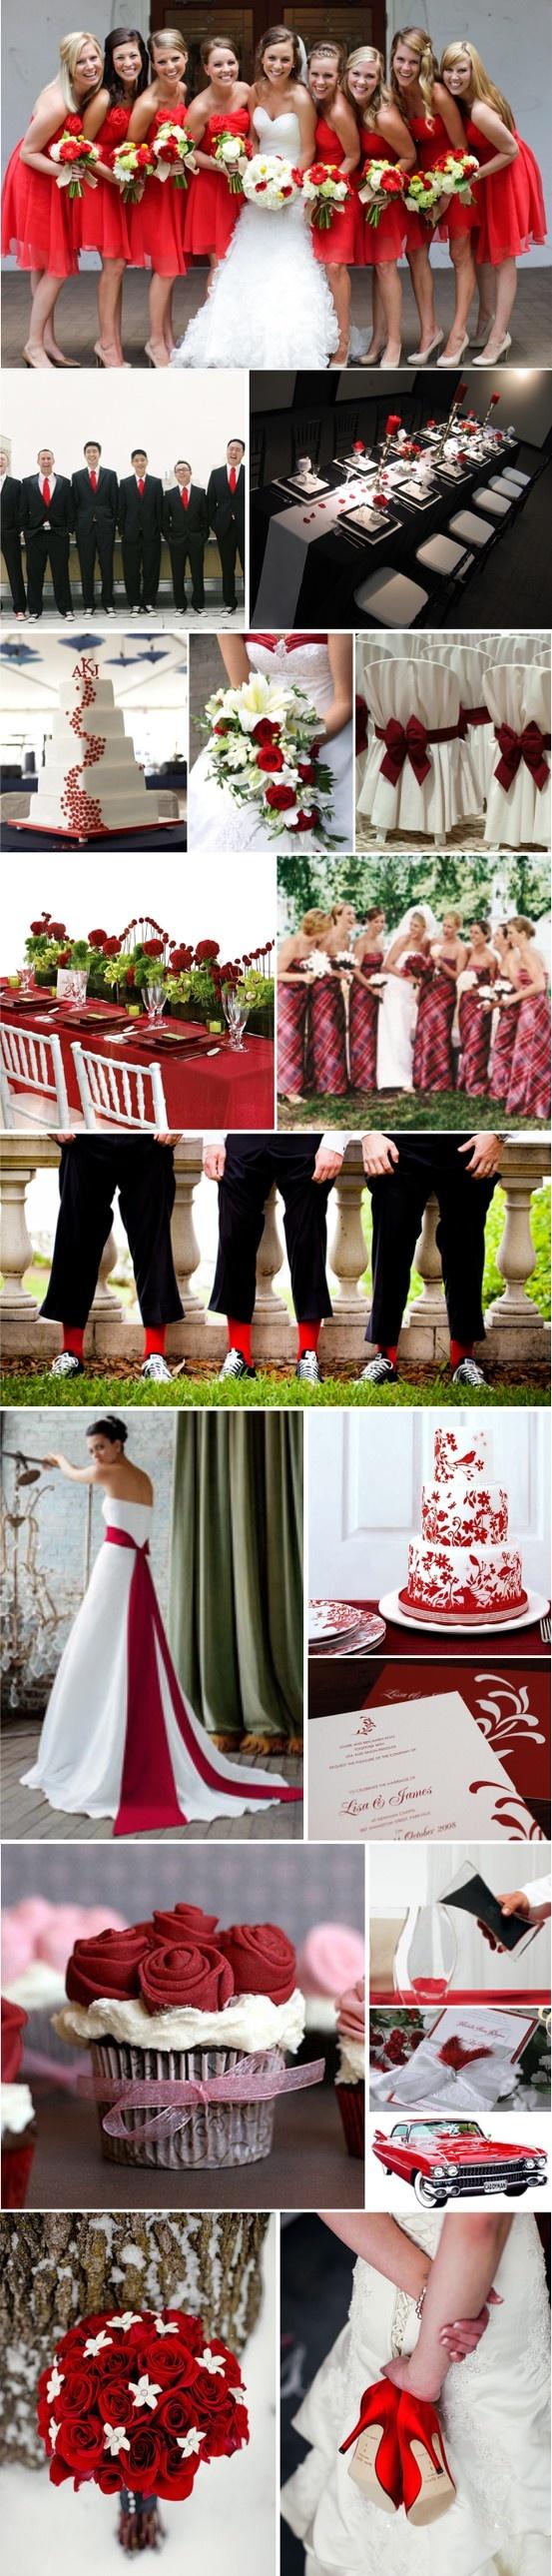 Wedding - Red Weddings